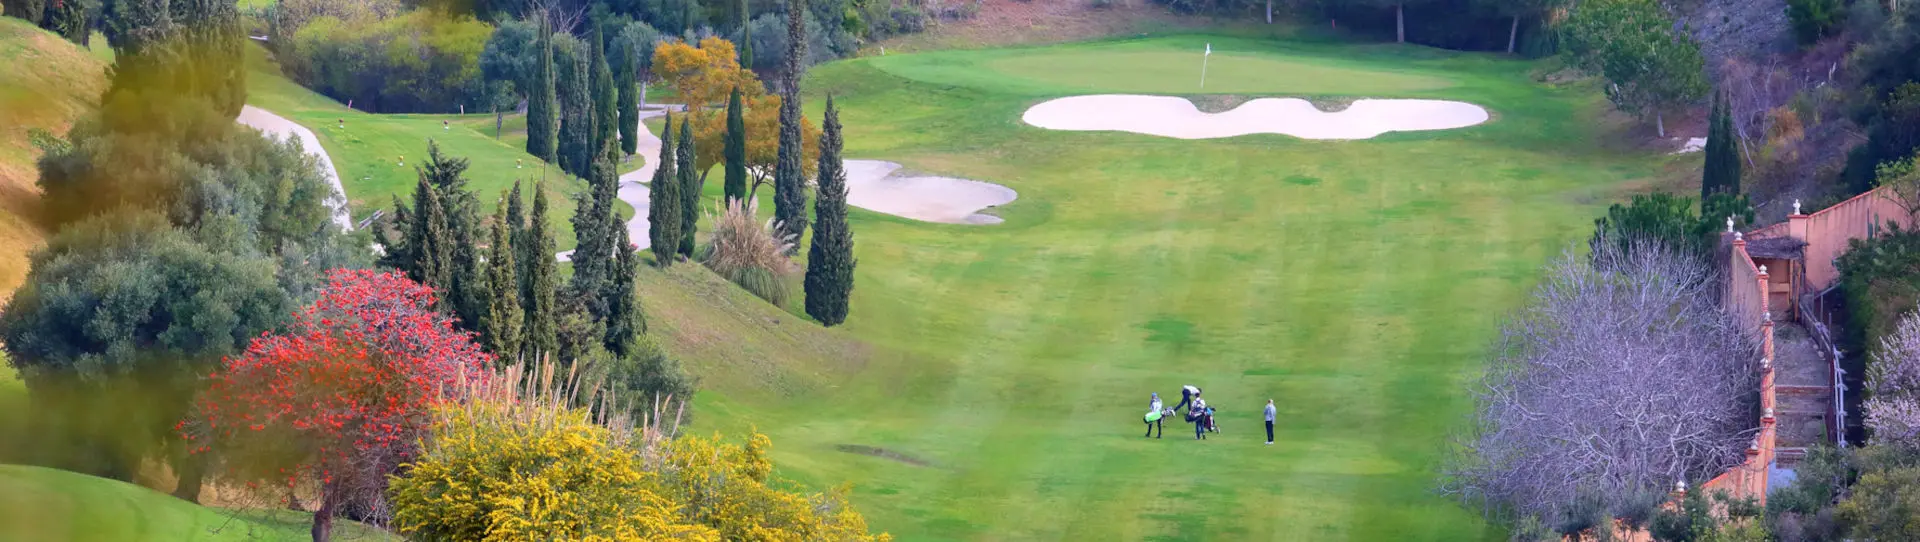 Spain golf courses - Tramores Golf at Villa Padierna - Photo 1